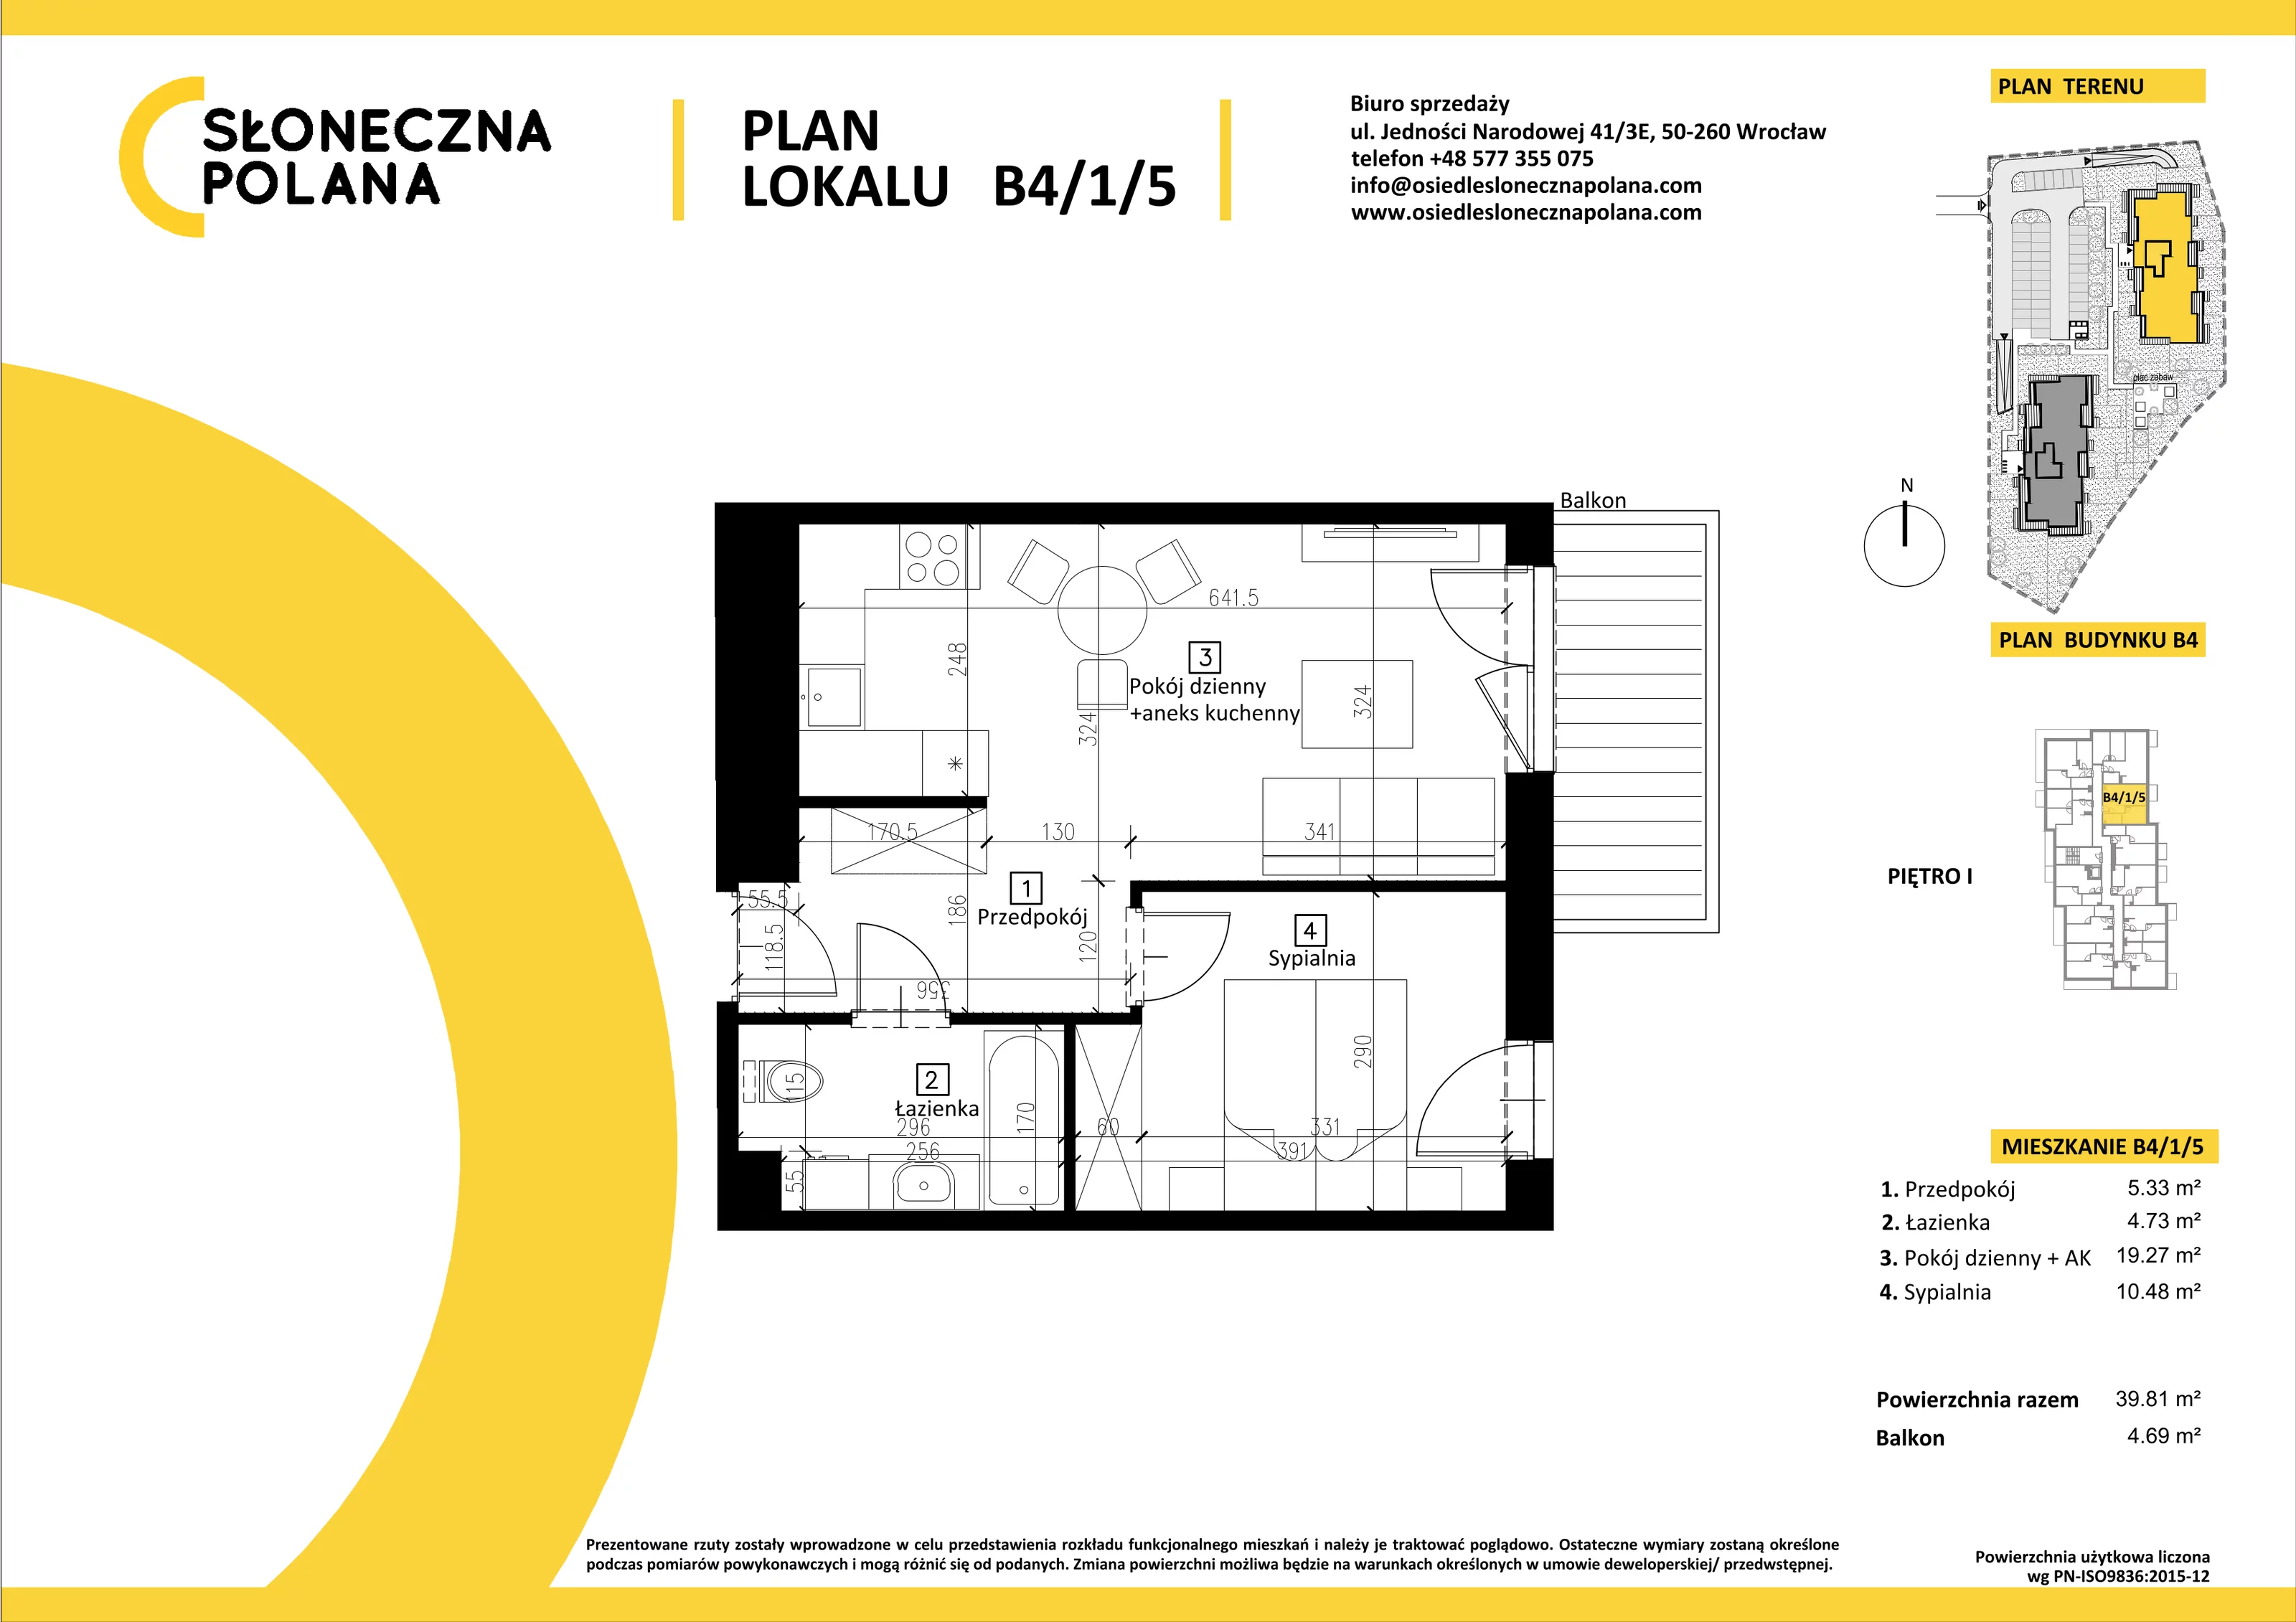 Mieszkanie 39,81 m², piętro 1, oferta nr B4/1/5, Słoneczna Polana, Kudowa-Zdrój, ul. Bluszczowa